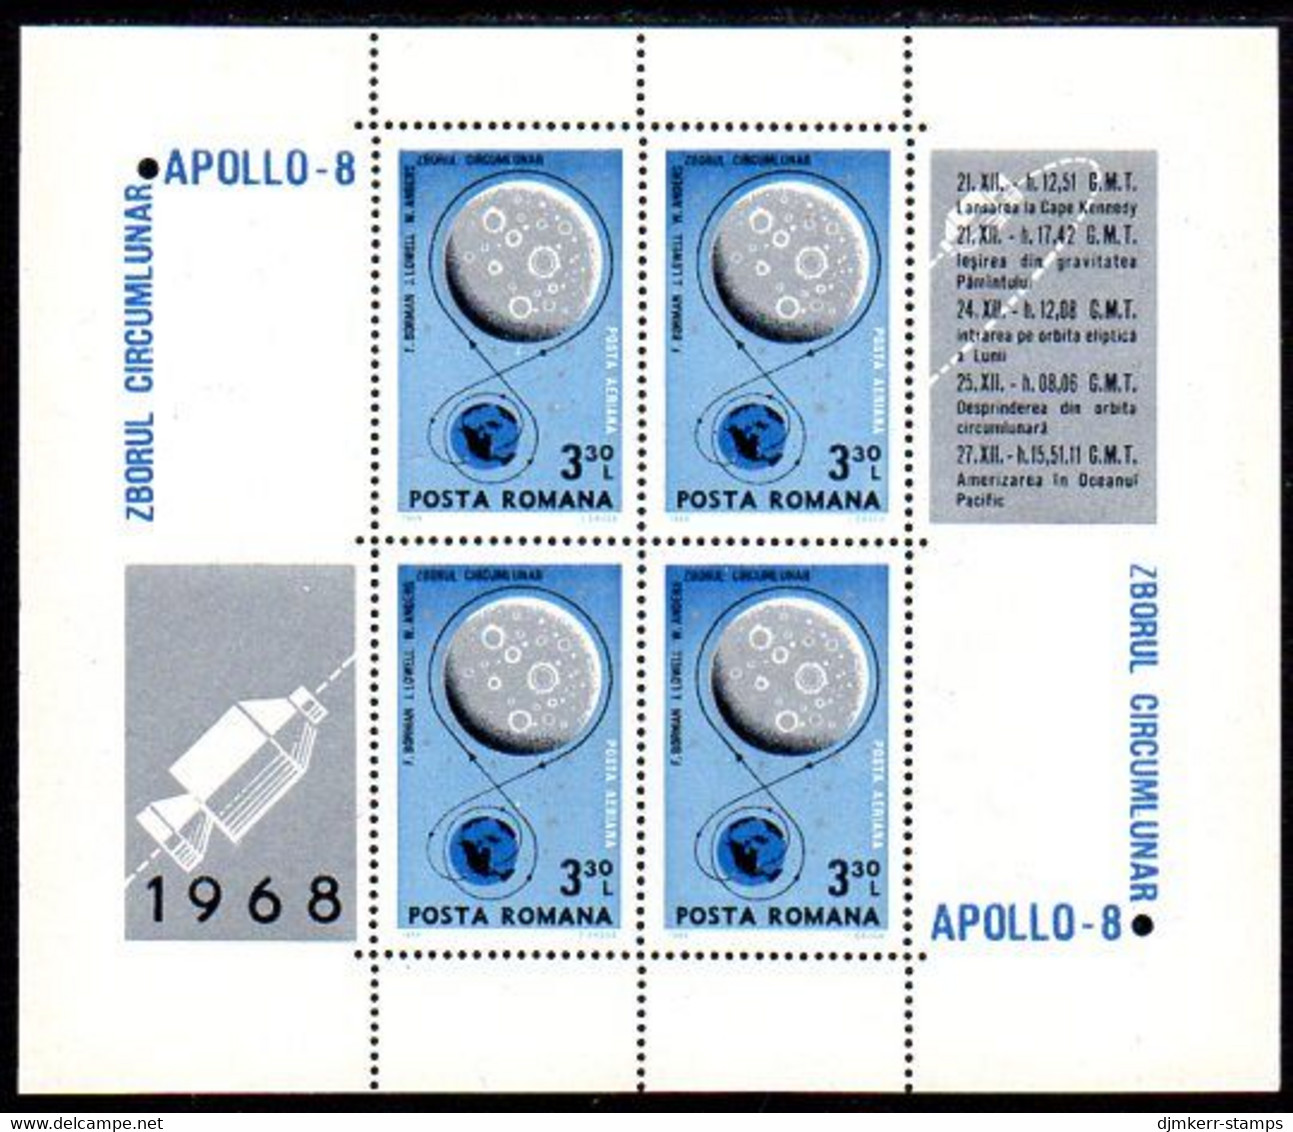 ROMANIA 1969 Apollo 8 Moon Landing  Block  MNH / **.  Michel Block 69 - Blocks & Kleinbögen